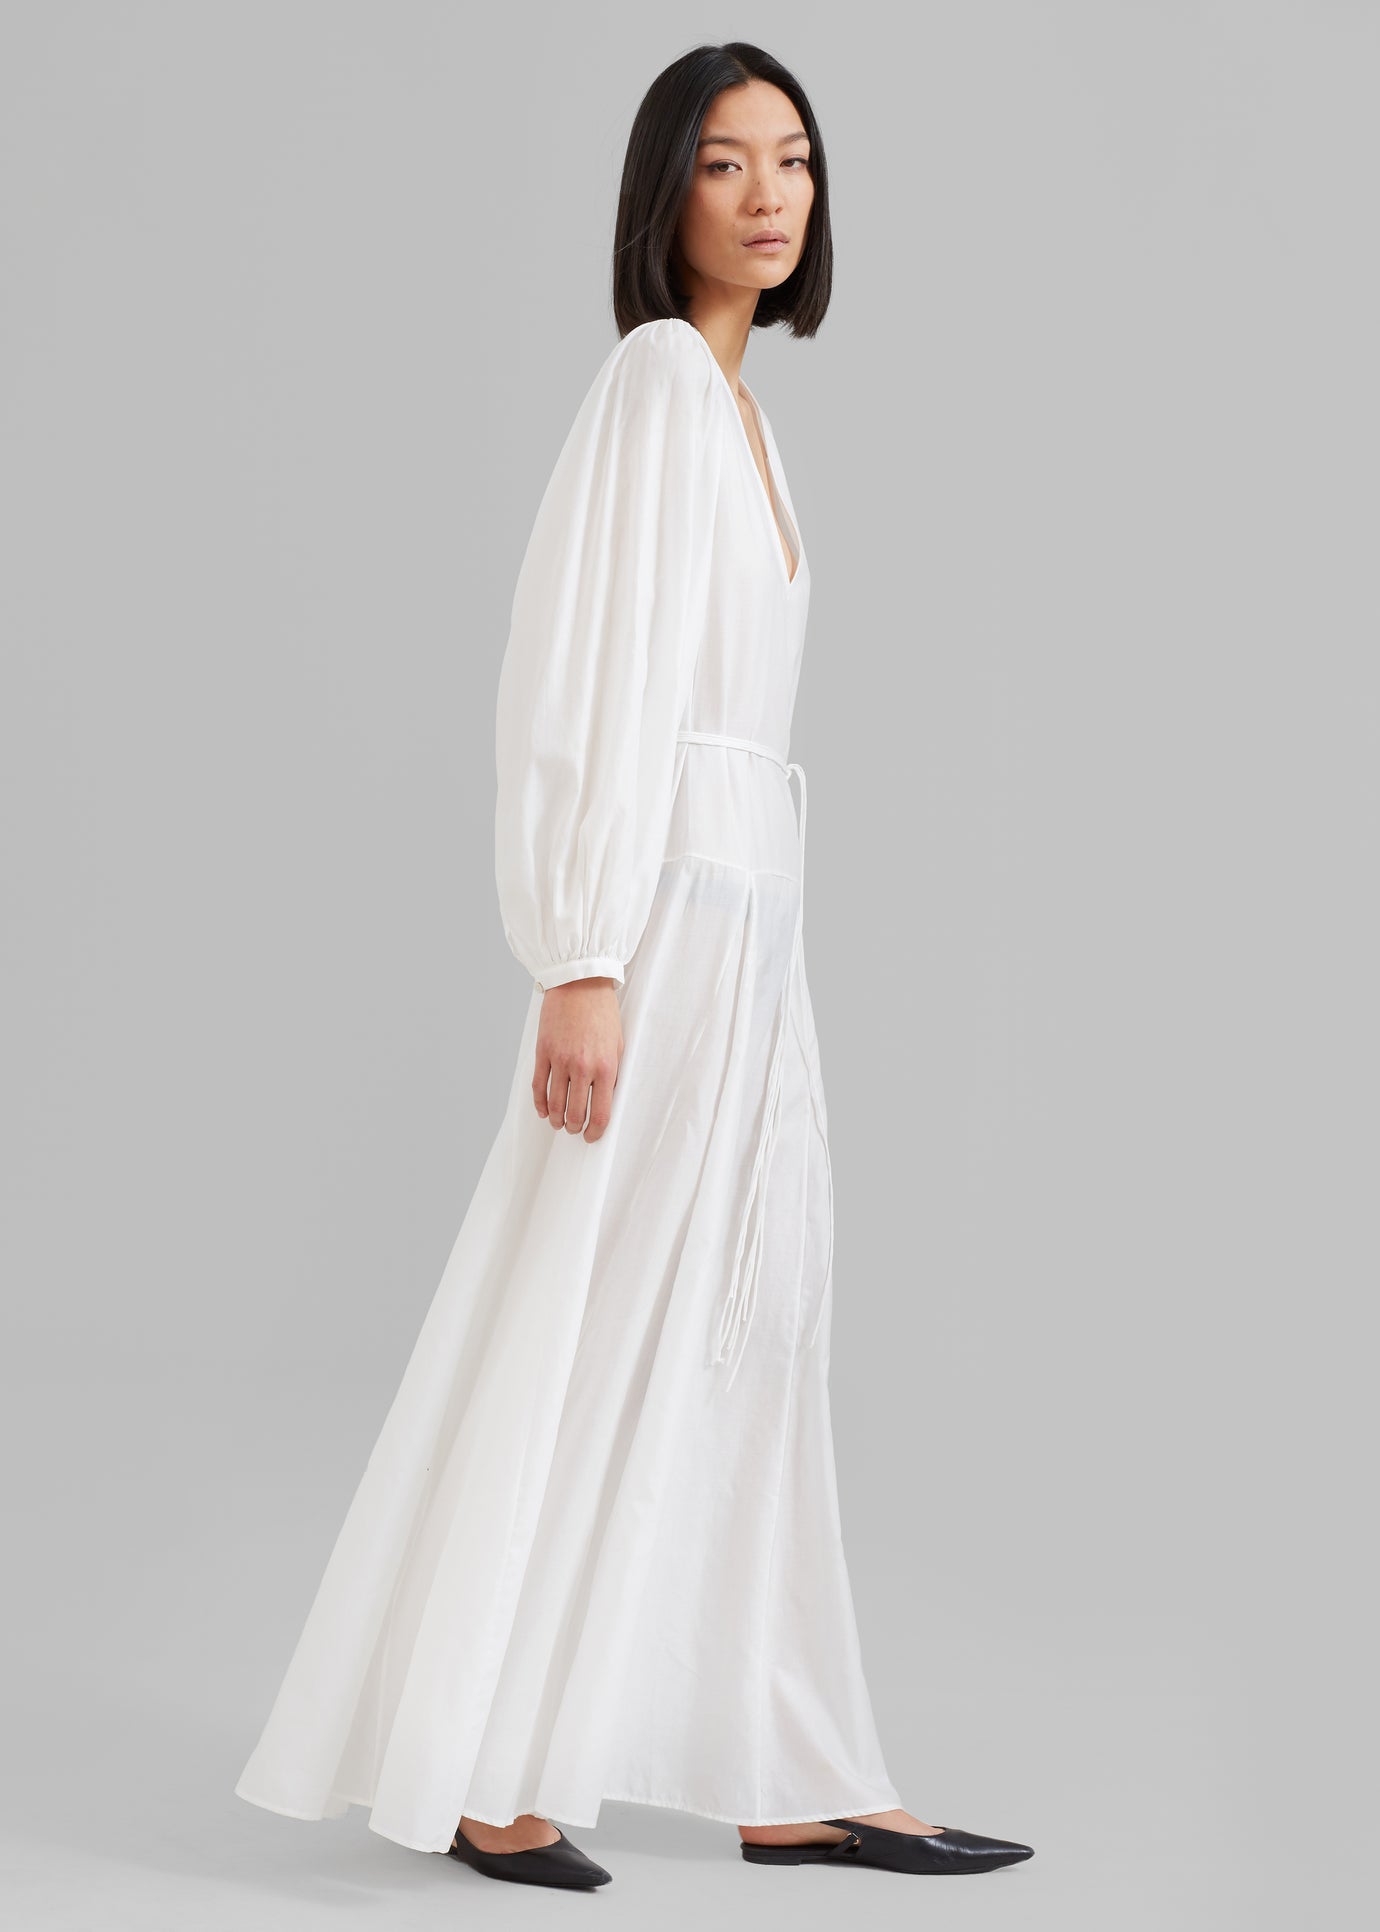 MATIN Cortona Dress - White - 1